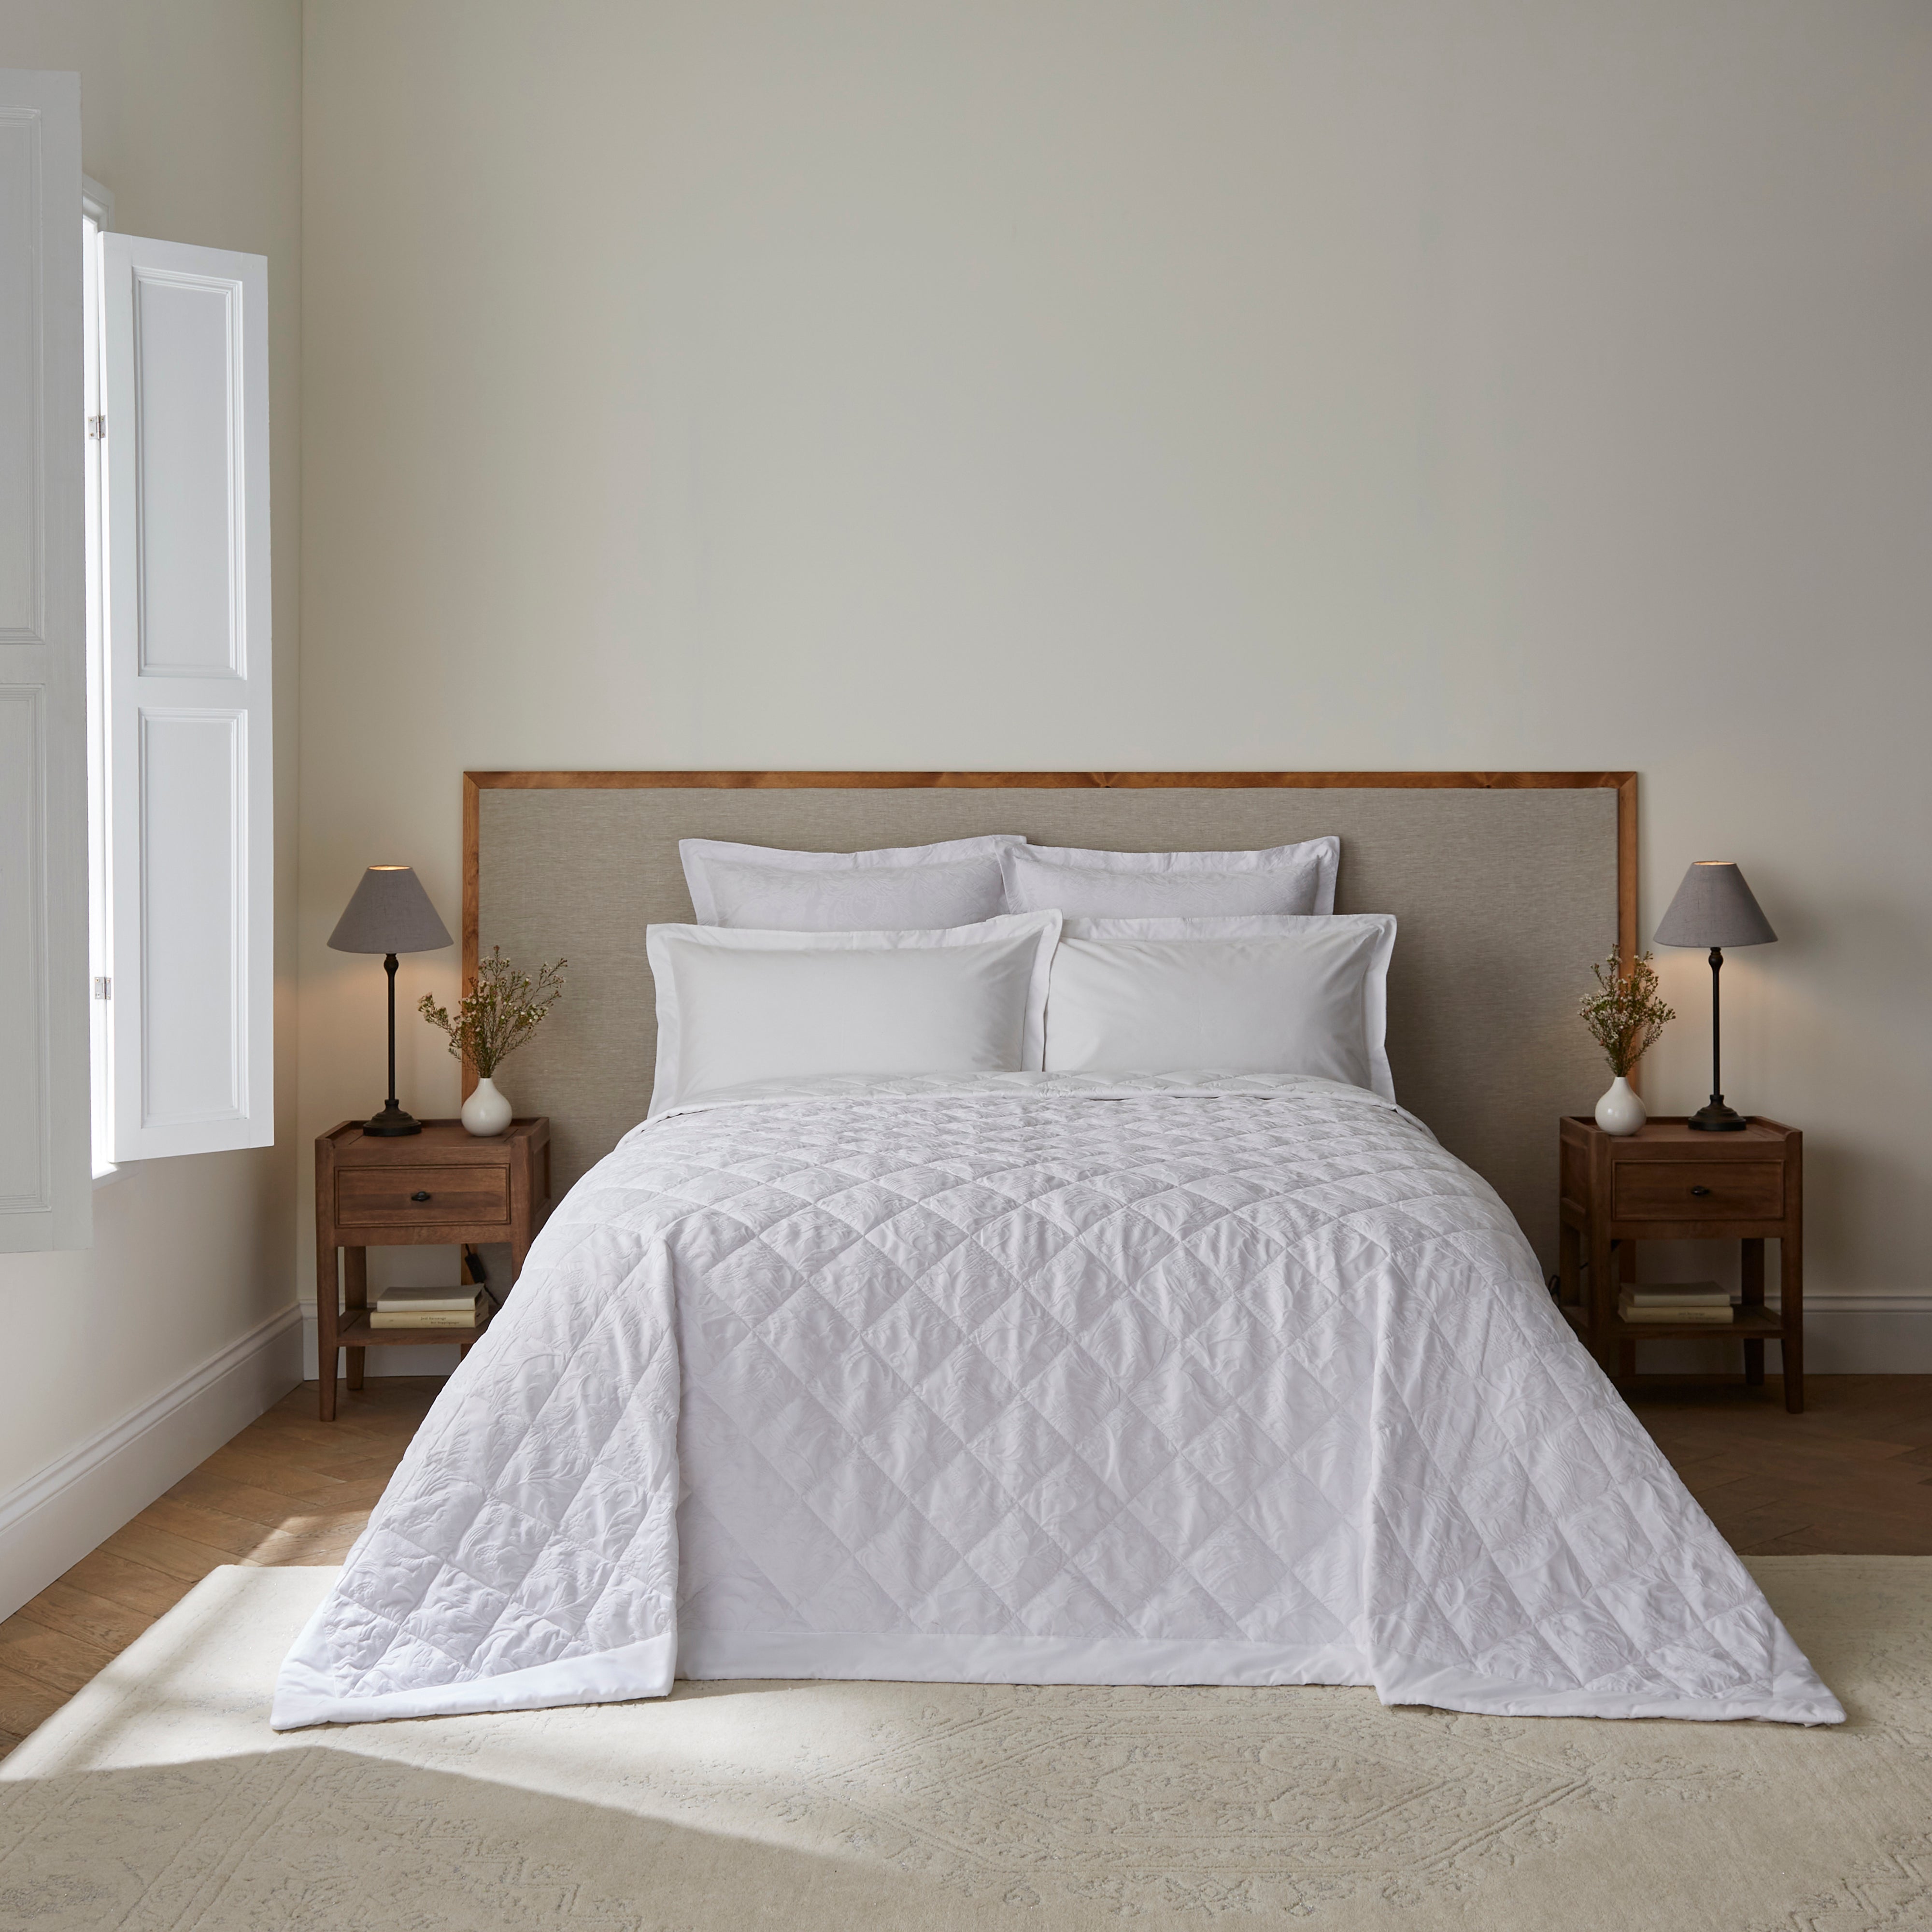 Dorma Winchester White Bedspread White